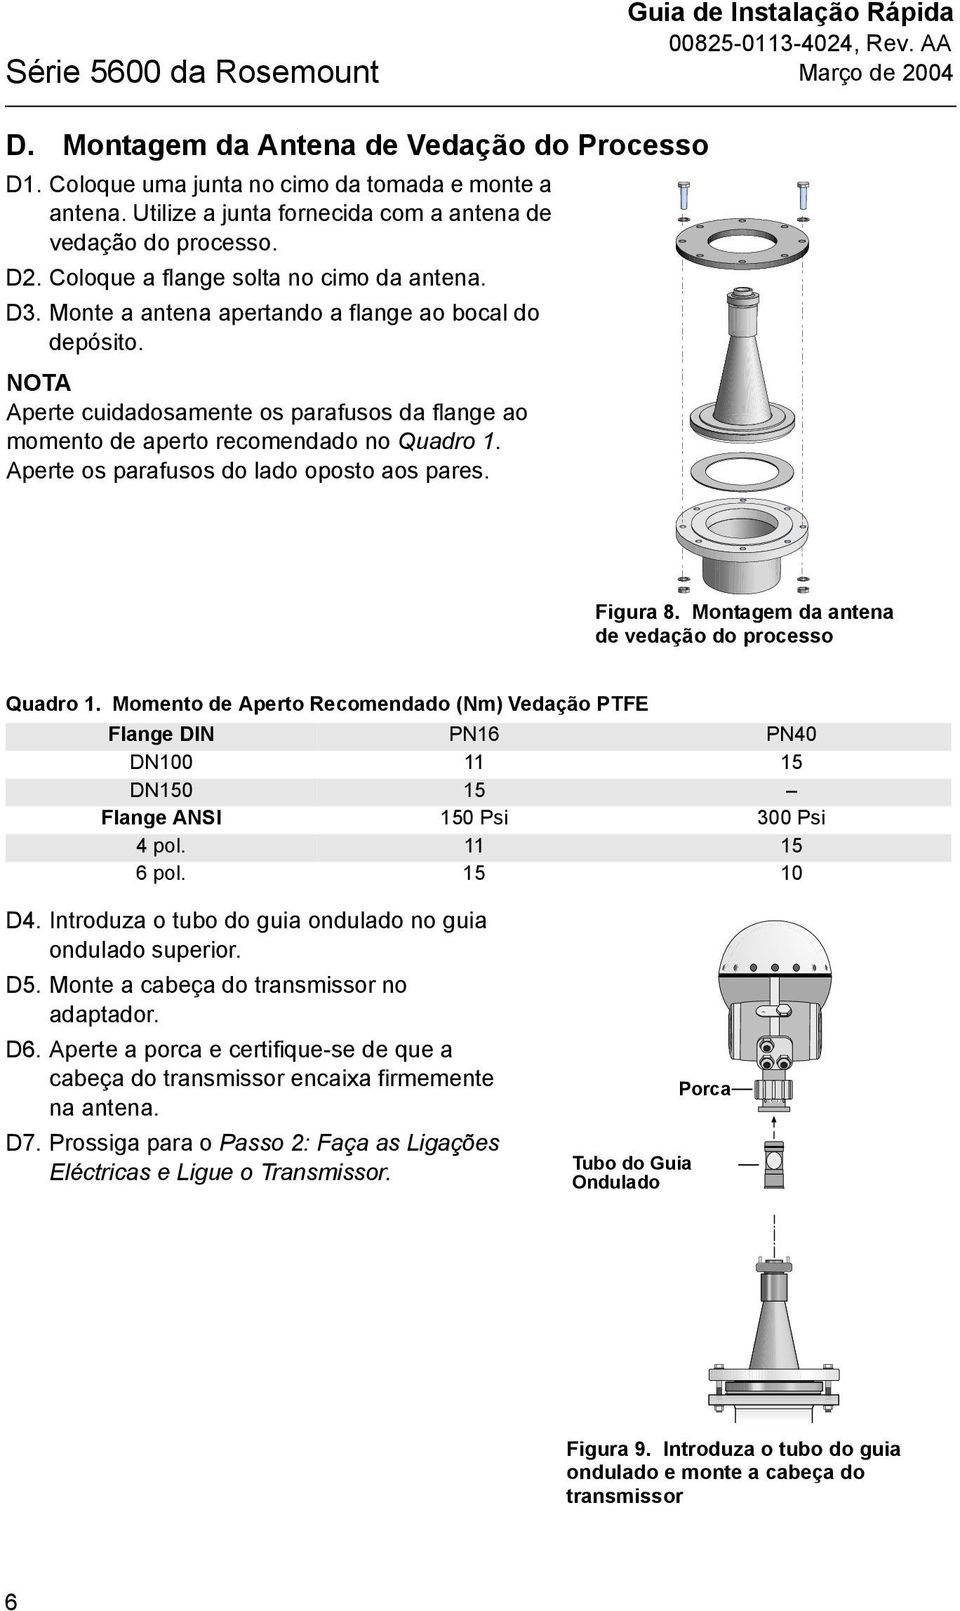 Process_Seal_Antenna_Mount.eps Figura 8. Montagem da antena de vedação do processo Quadro.